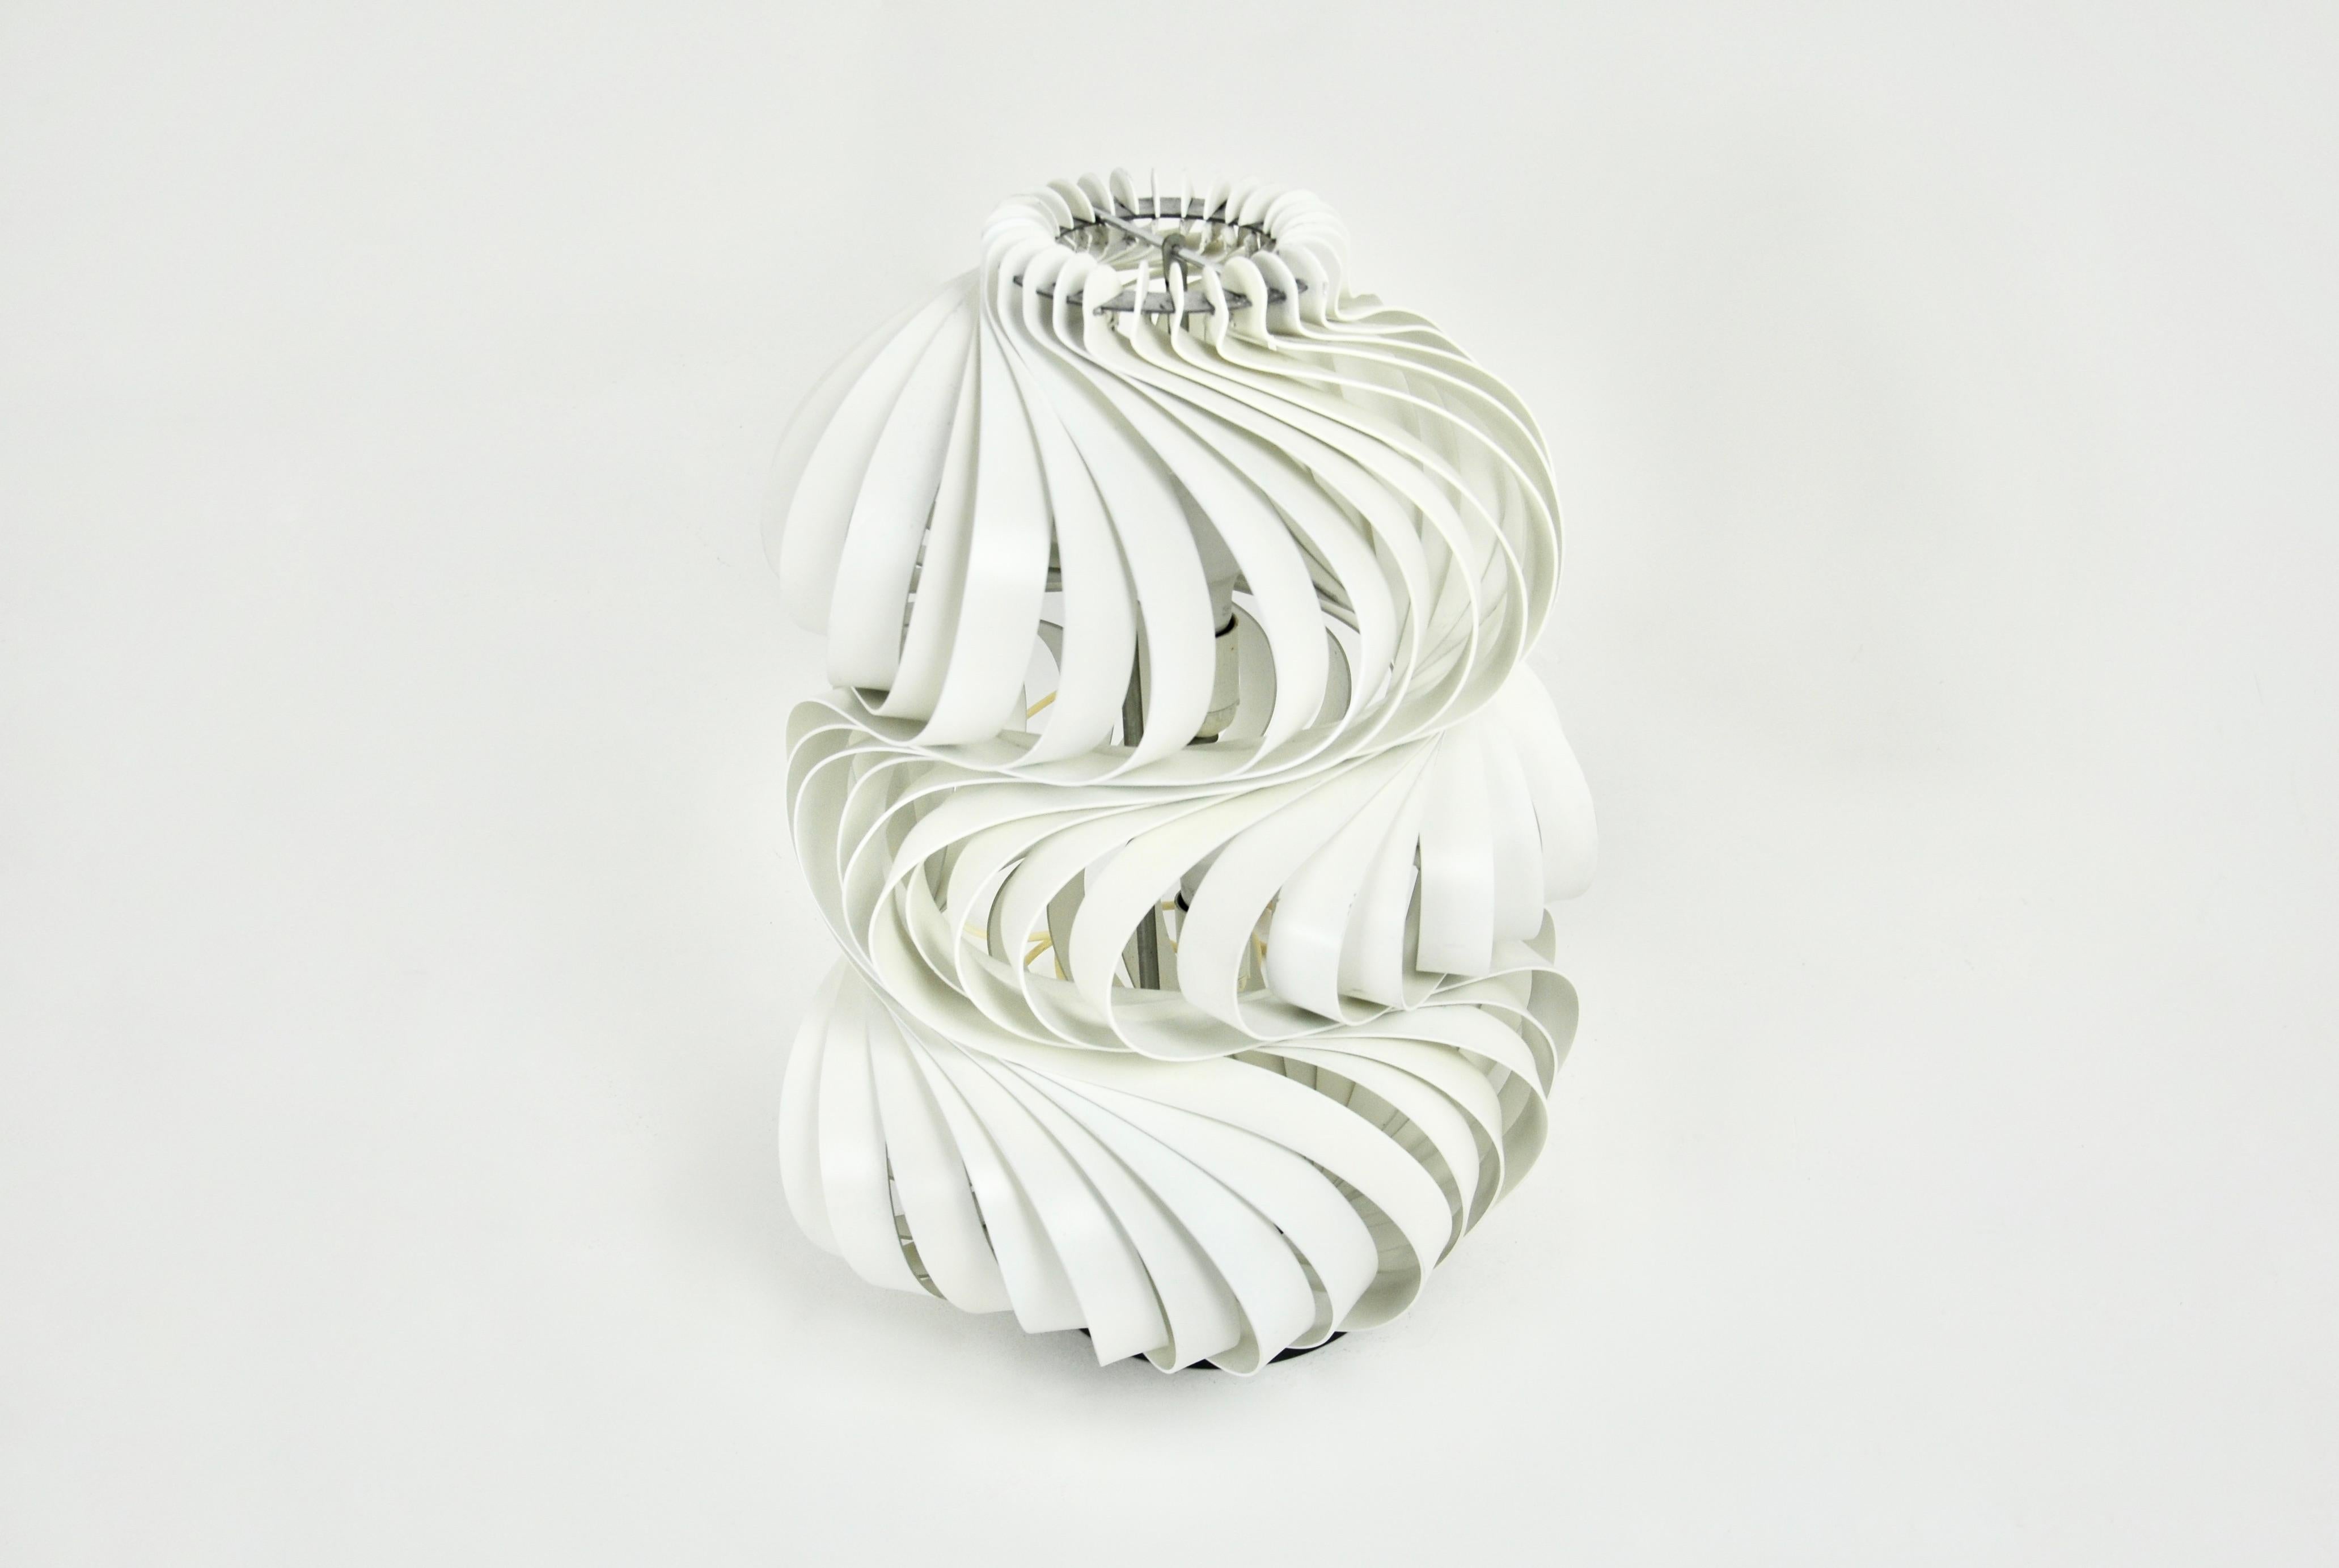 Lampe en spirale avec des lames en métal blanc par Olaf Von Bohr. Modèle : Médusa. Usure due au temps et à l'âge de la lampe.